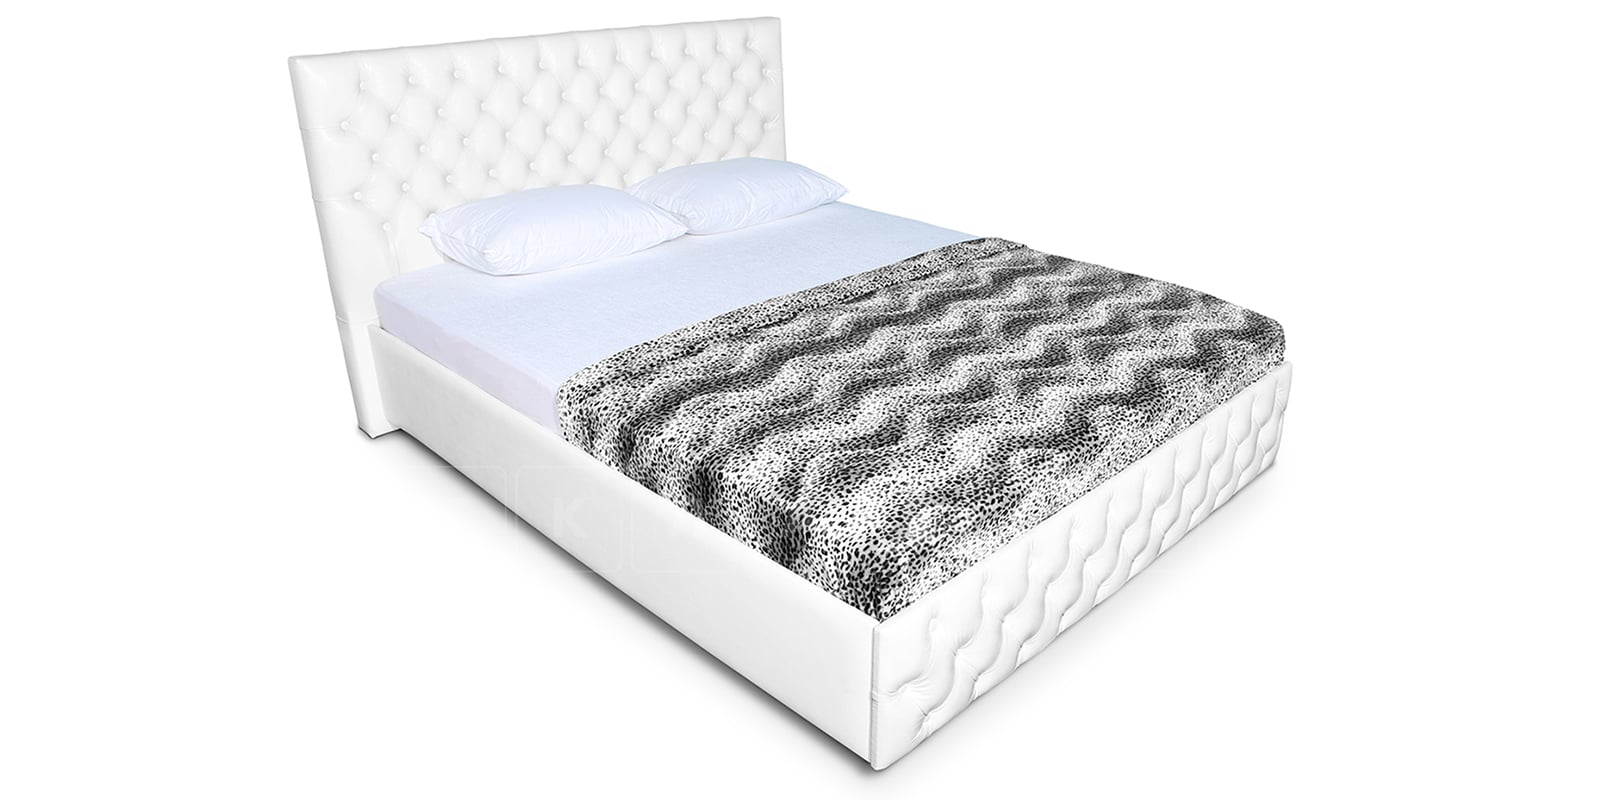 Мягкая кровать Малибу 160 см экокожа белого цвета вариант 4 фото 3 | интернет-магазин Складно